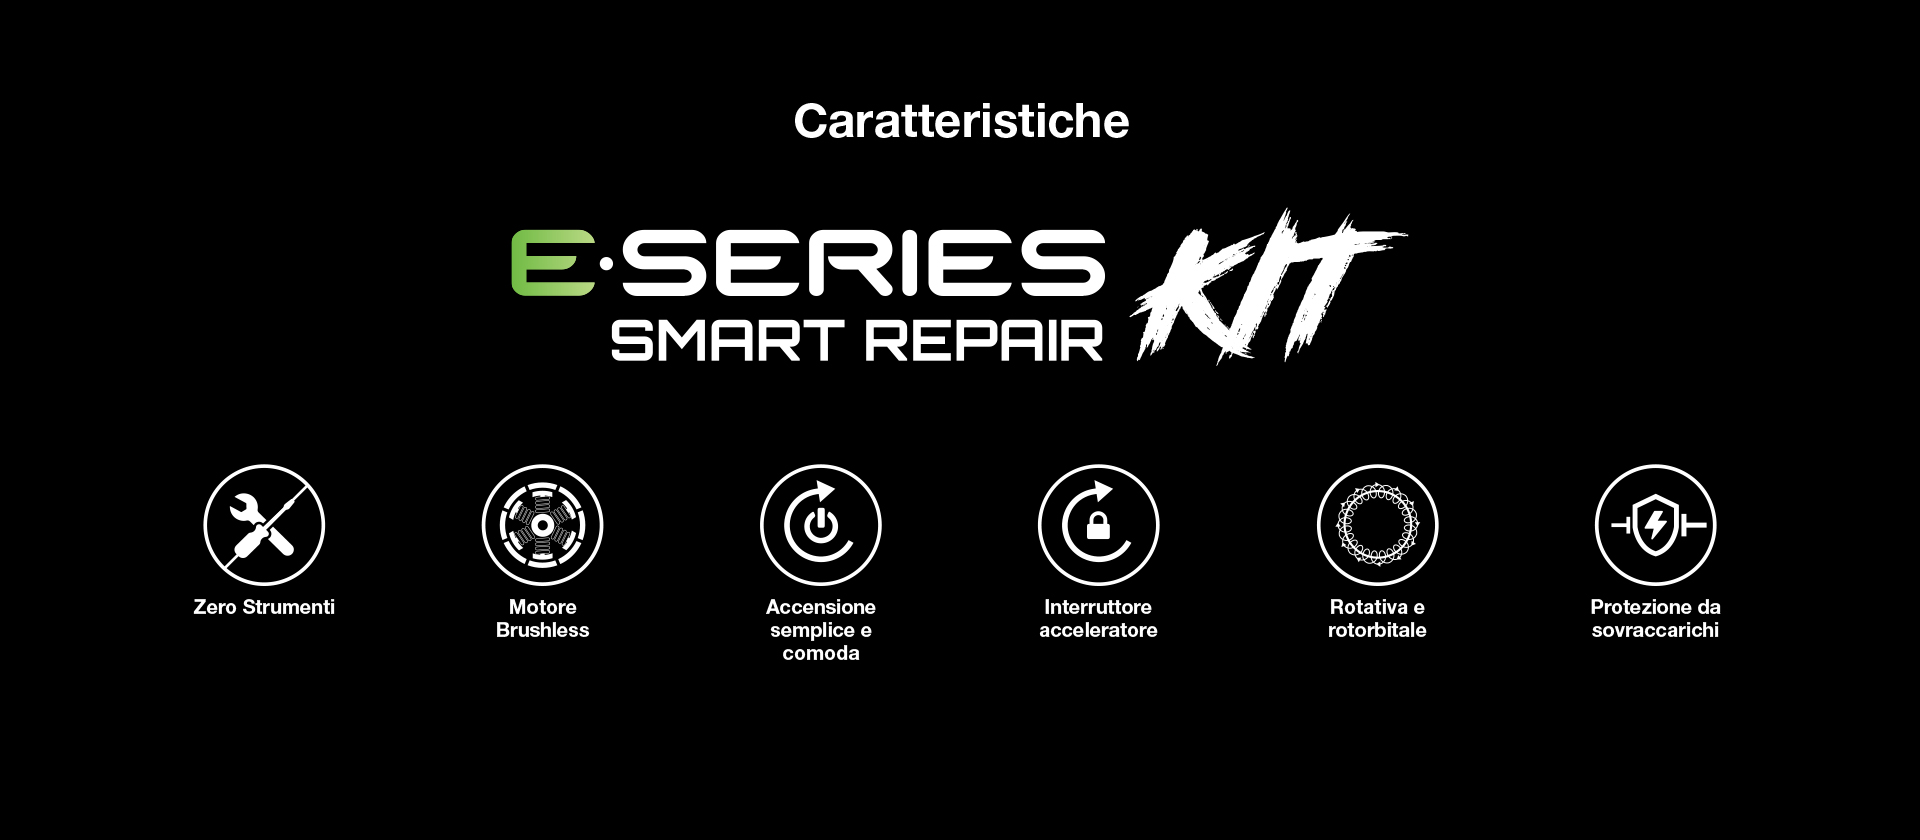 E-Series PRO X Smart Repair Kit Caratteristiche e Vantaggi